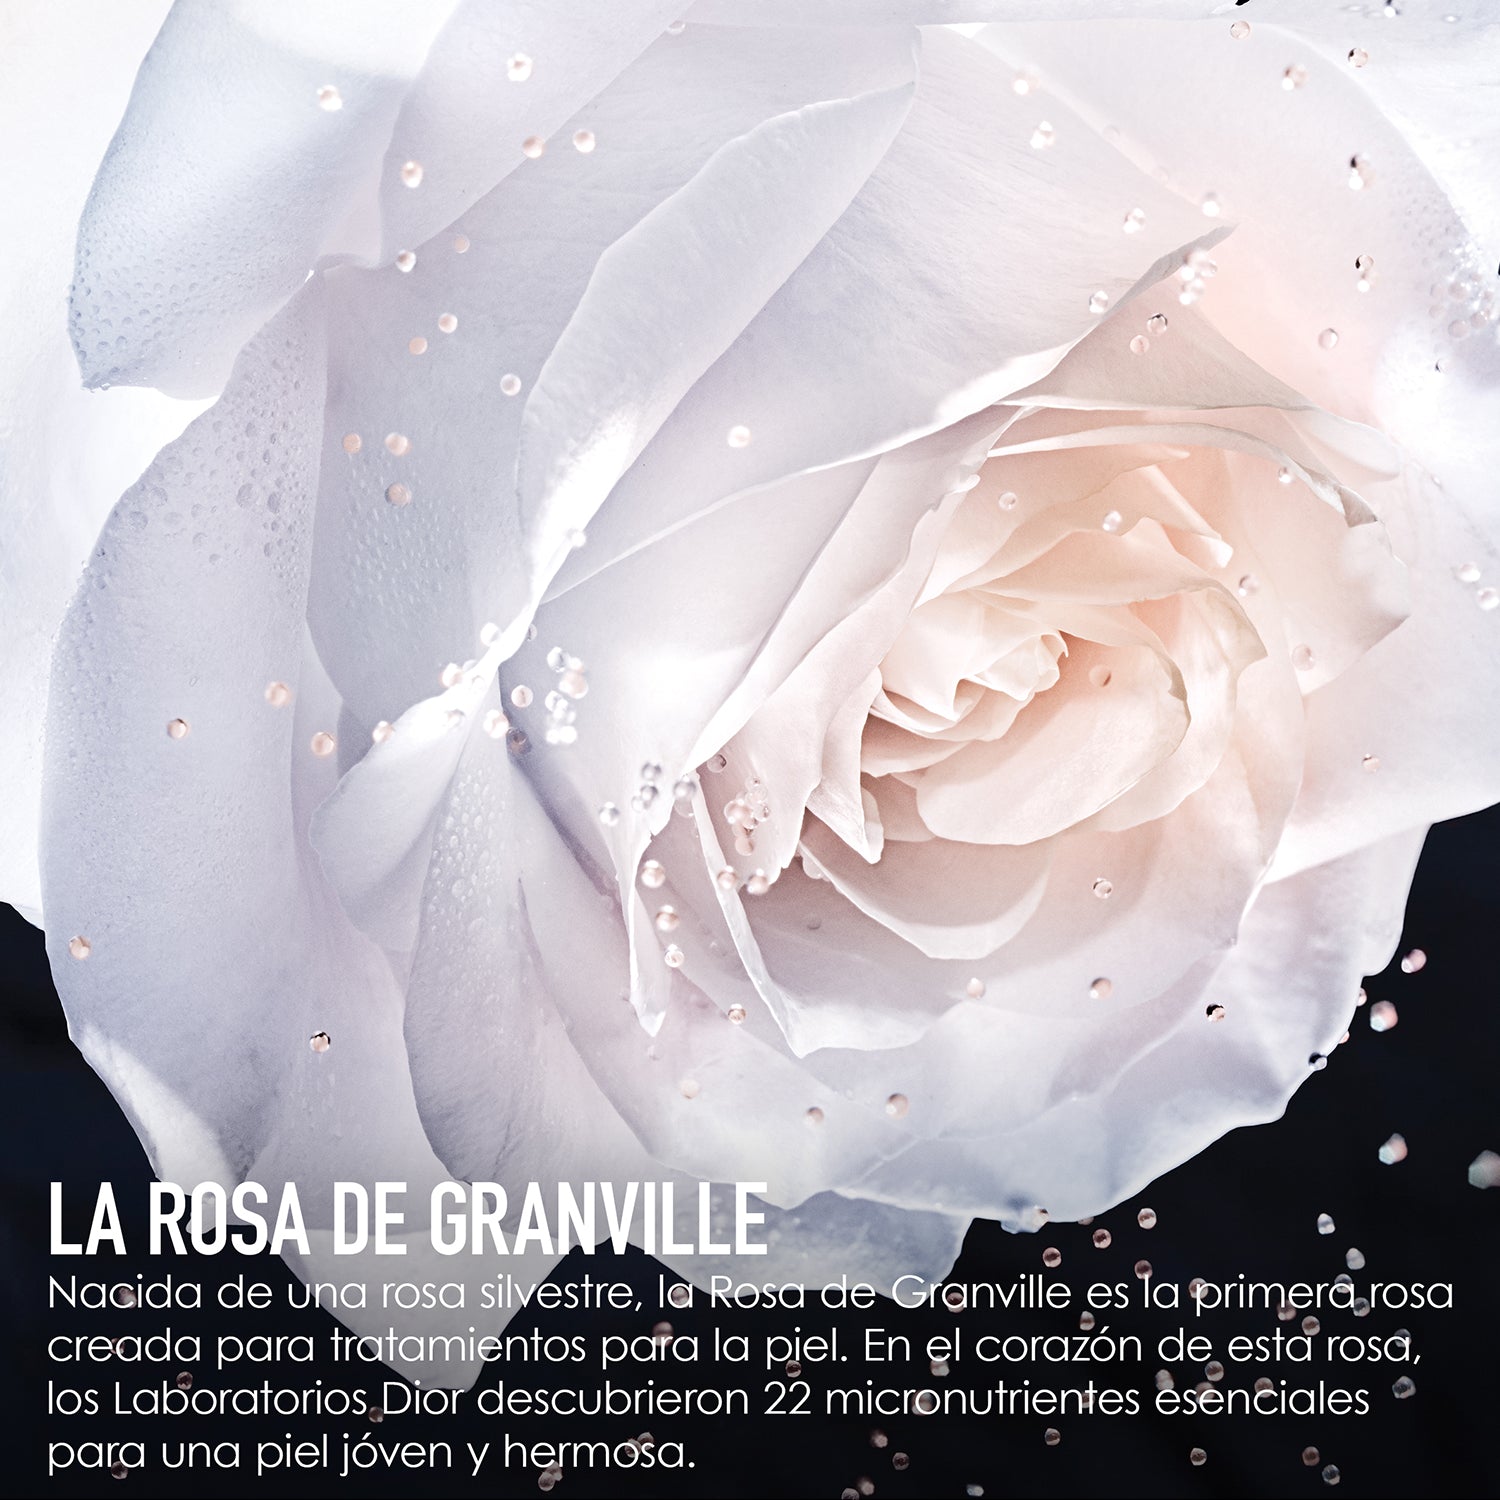 Dior Prestige La Micro Huile De Rose Serum